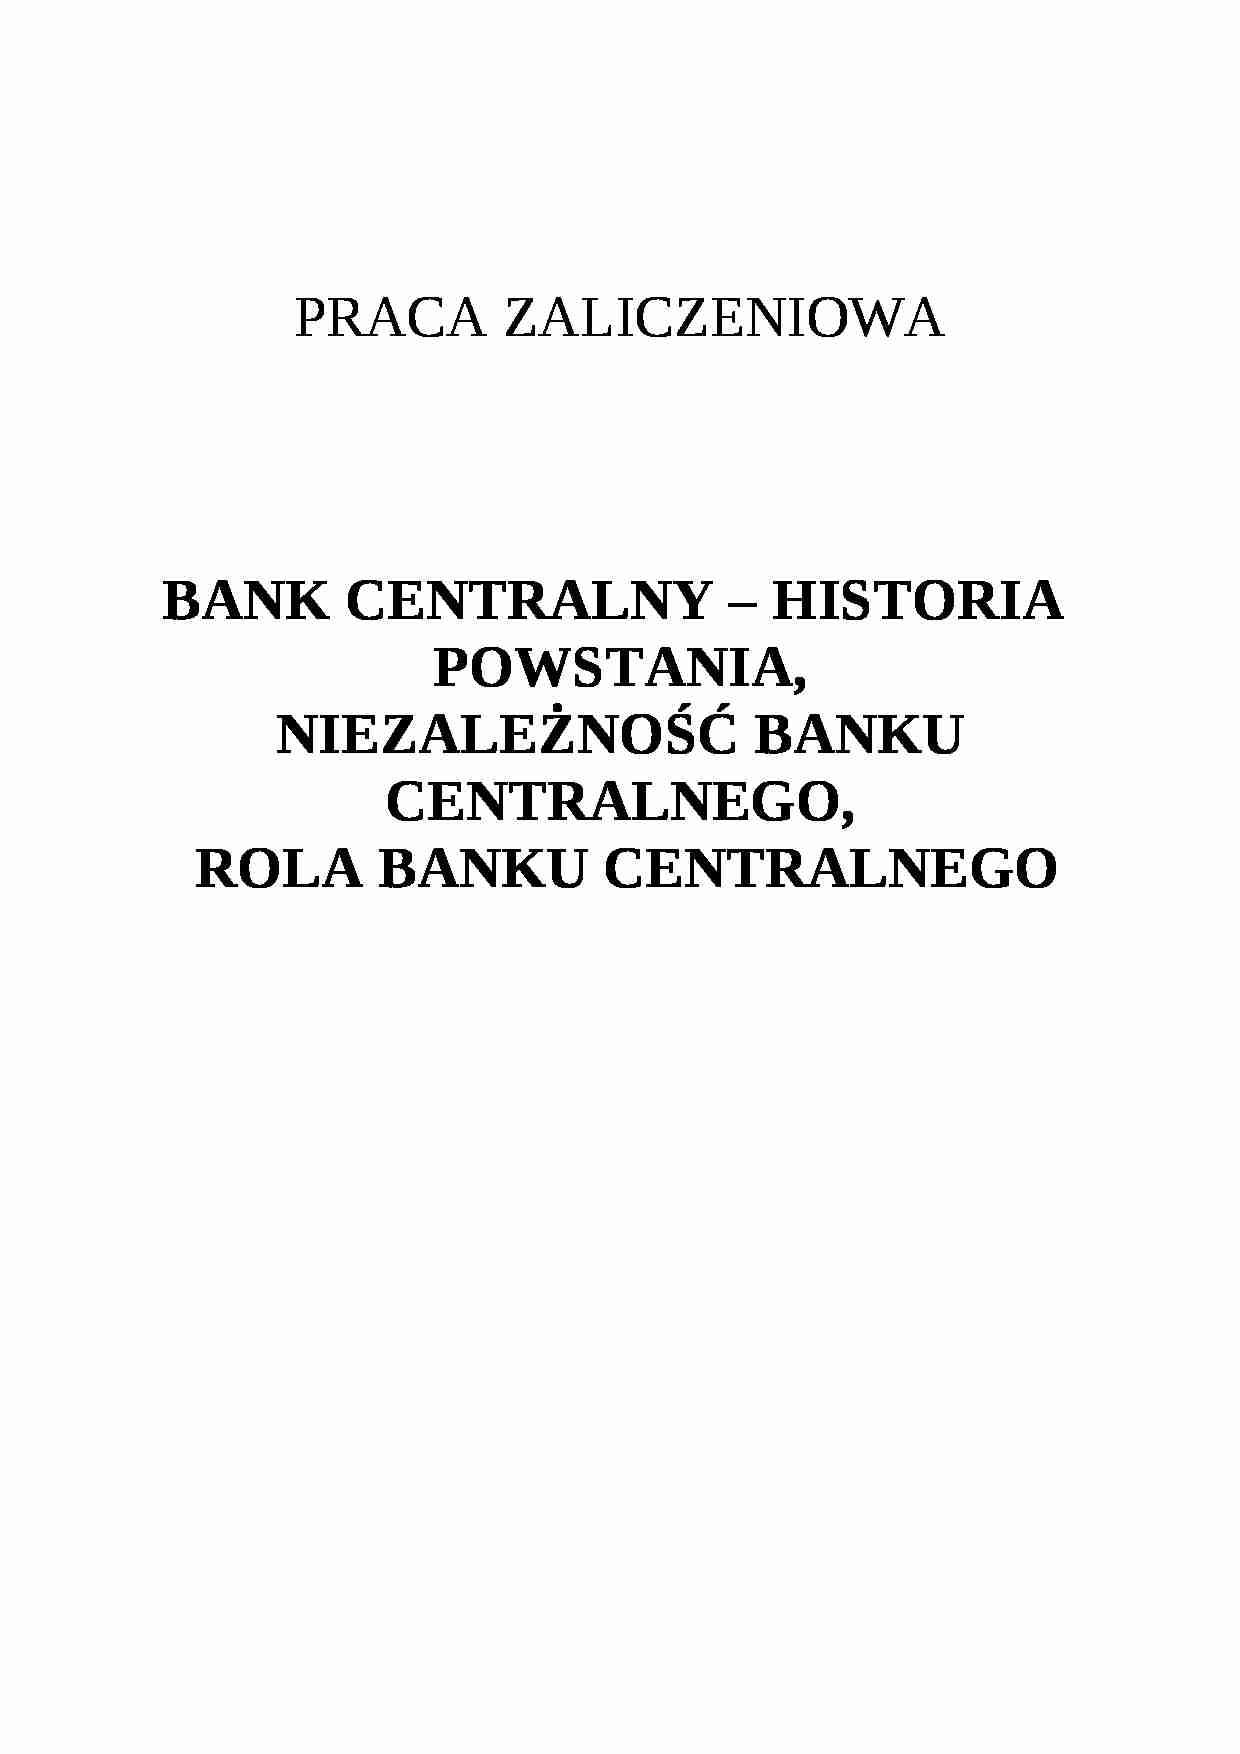 bank centralny - historia powstania, rola - strona 1